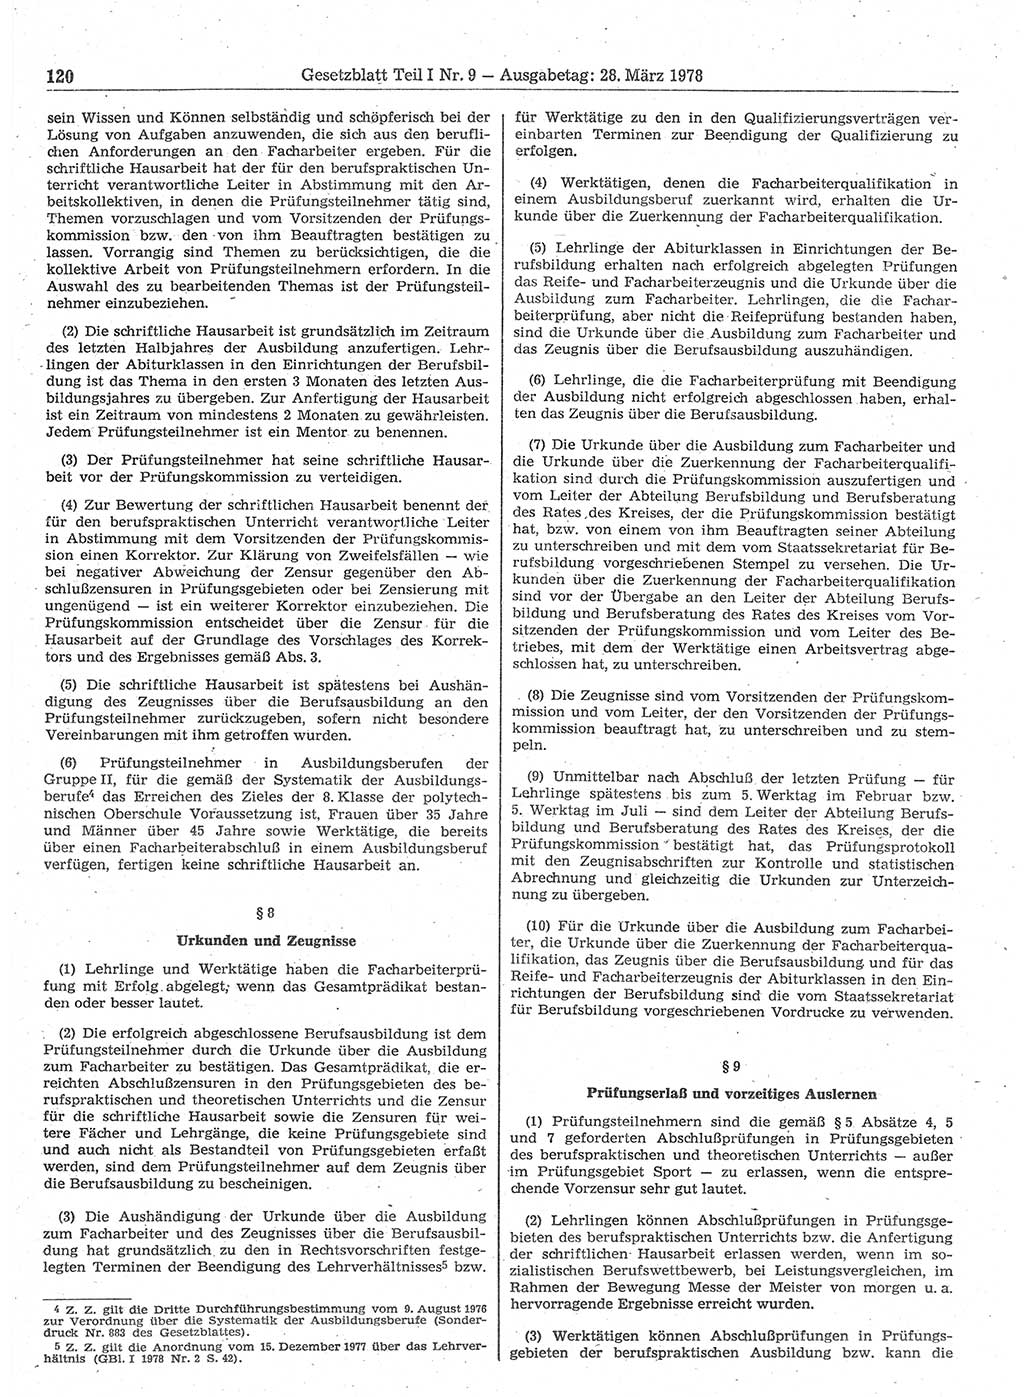 Gesetzblatt (GBl.) der Deutschen Demokratischen Republik (DDR) Teil Ⅰ 1978, Seite 120 (GBl. DDR Ⅰ 1978, S. 120)